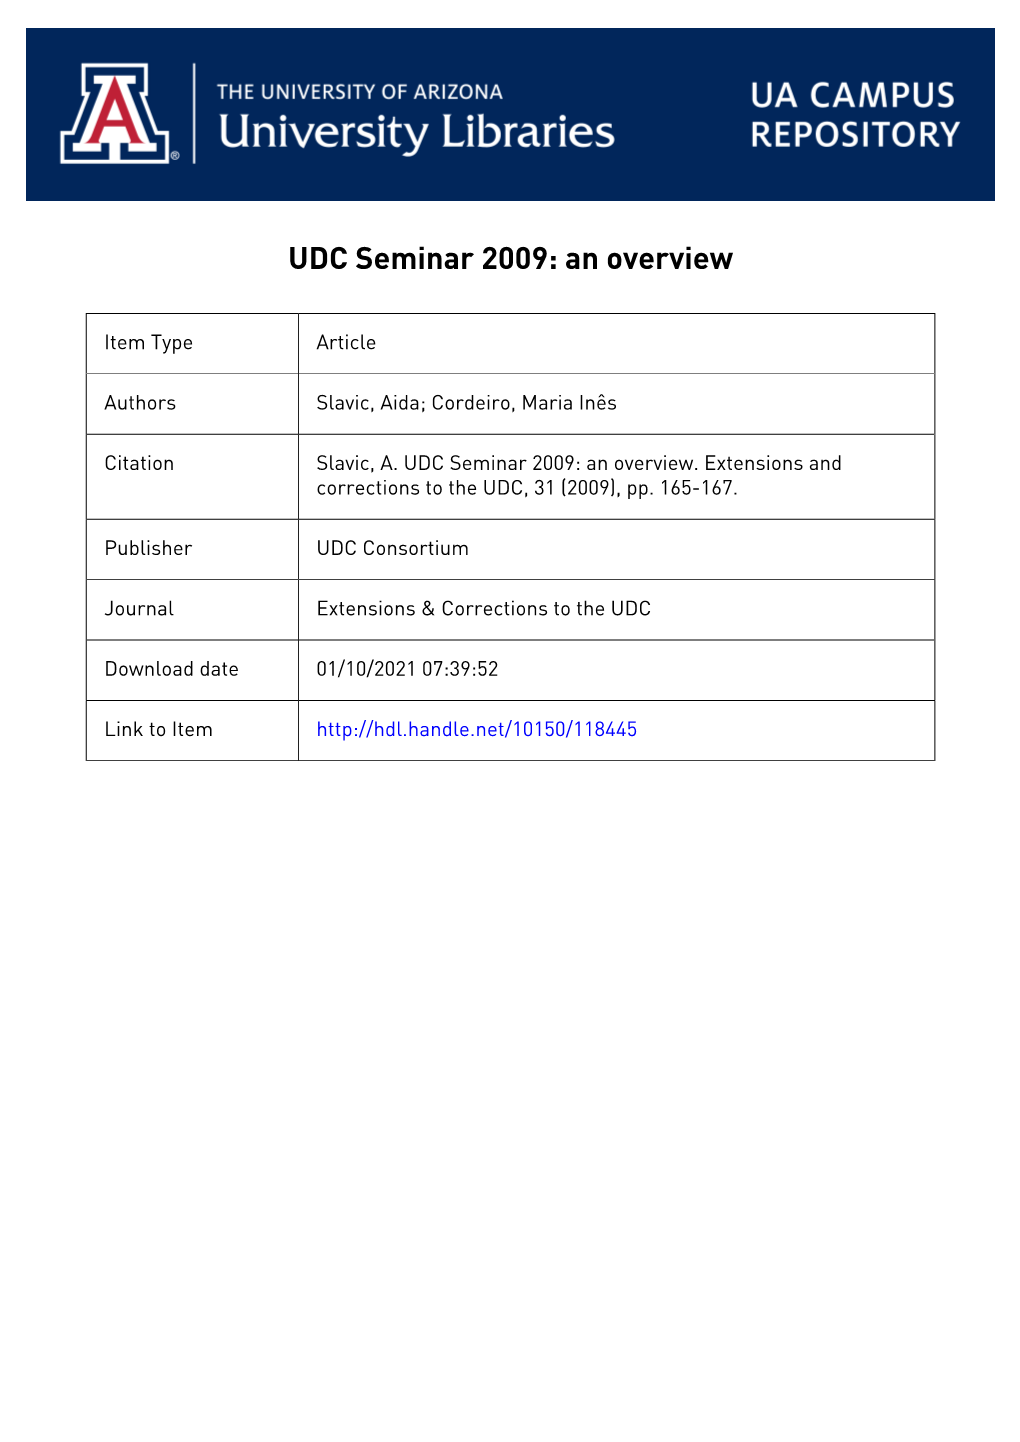 UDC Seminar 2009: an Overview